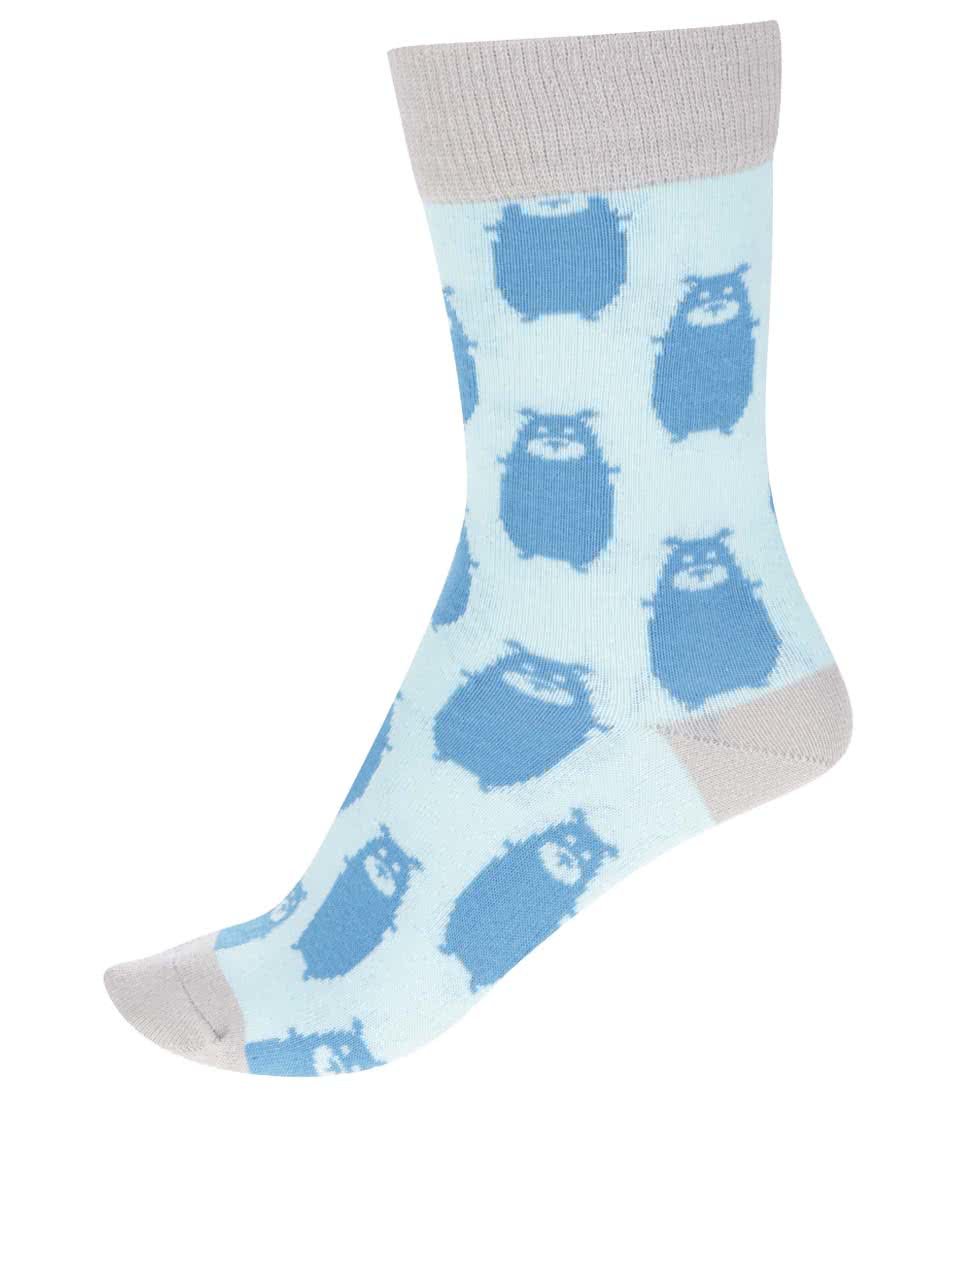 Modré ponožky s motivem medvěda ZOOT Originál